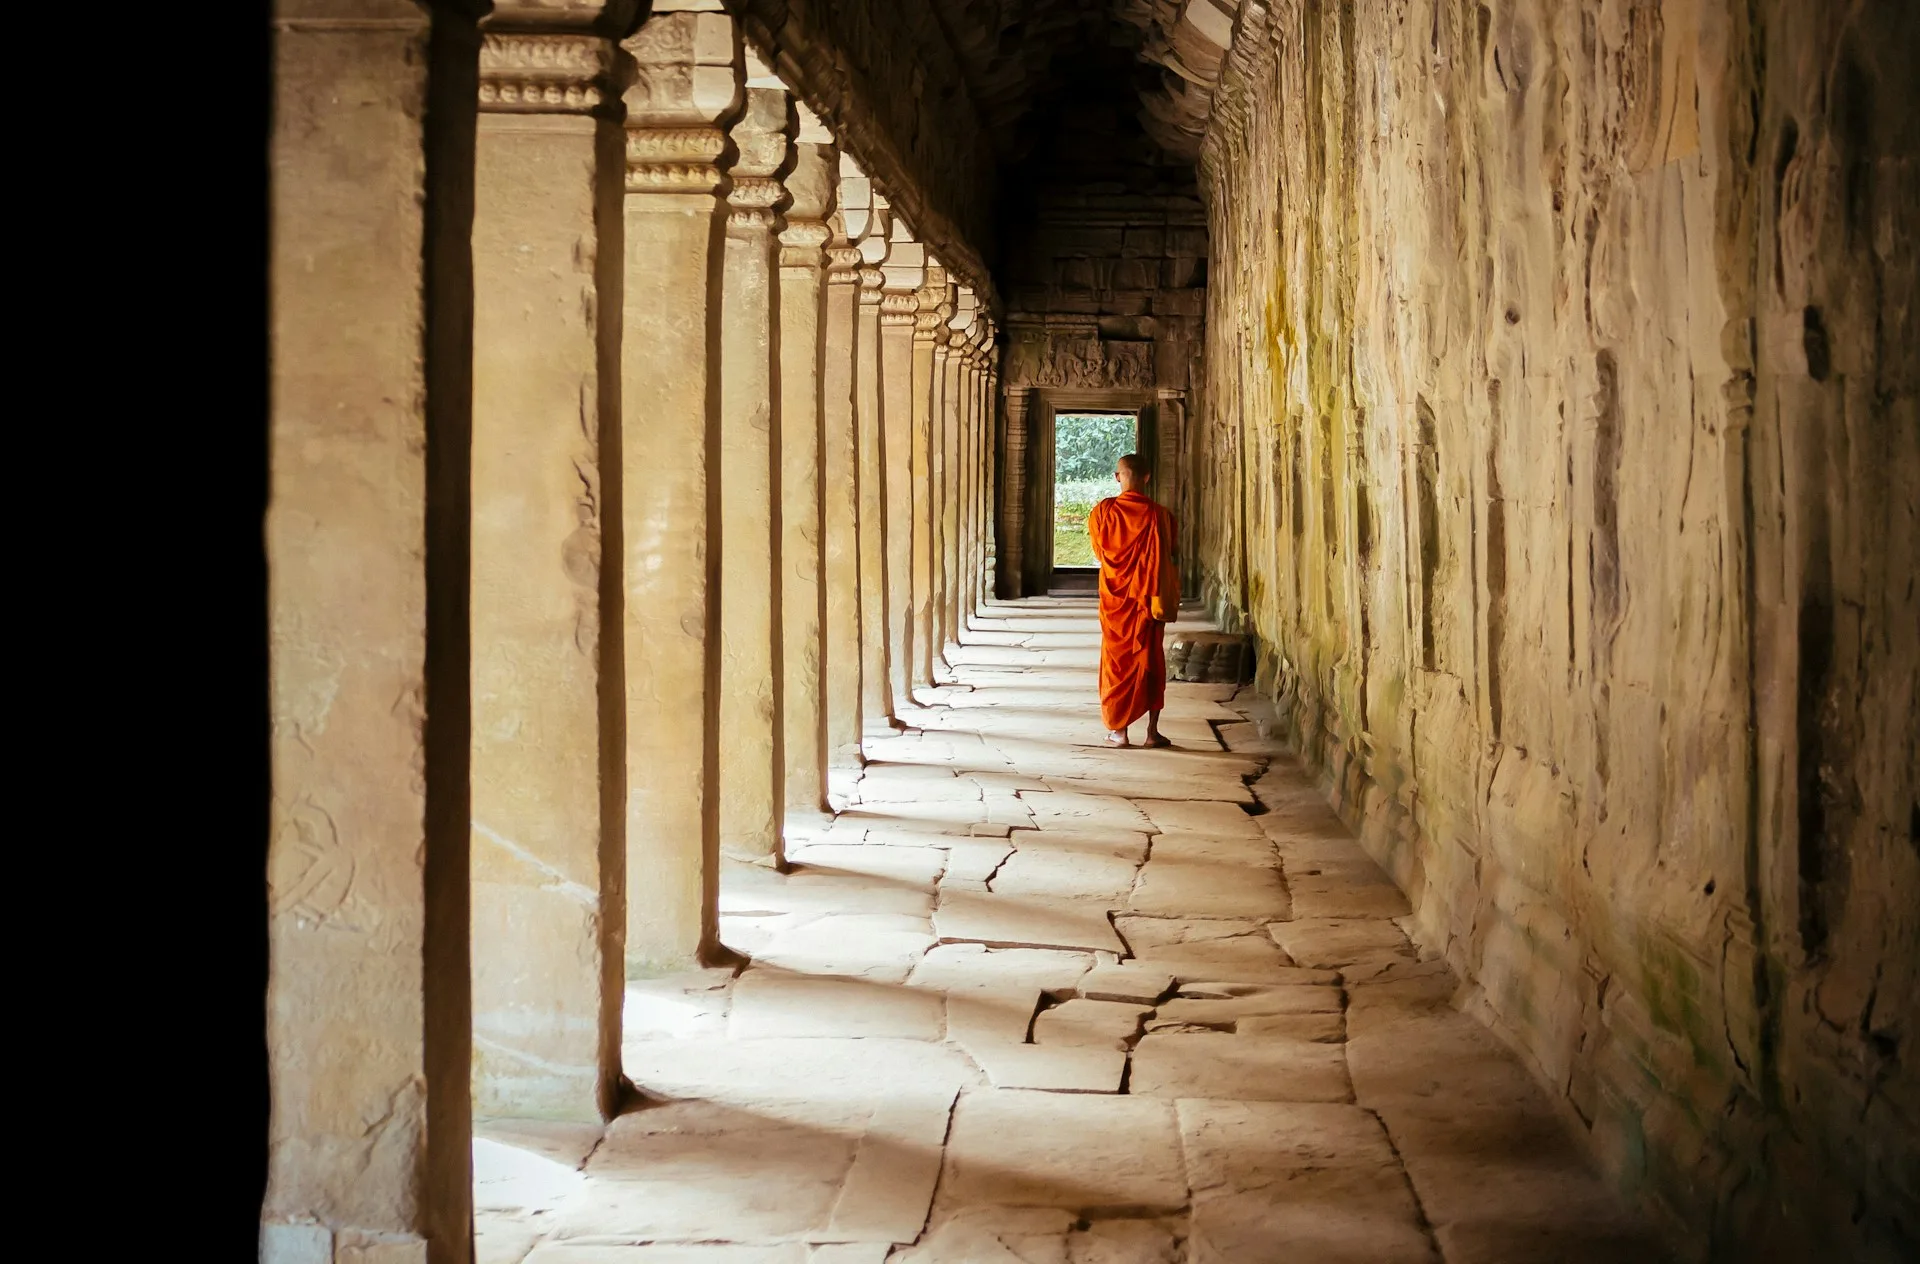 Mnich w pomarańczowej szacie idący wzdłuż korytarza kolumnowego w starożytnej świątyni.